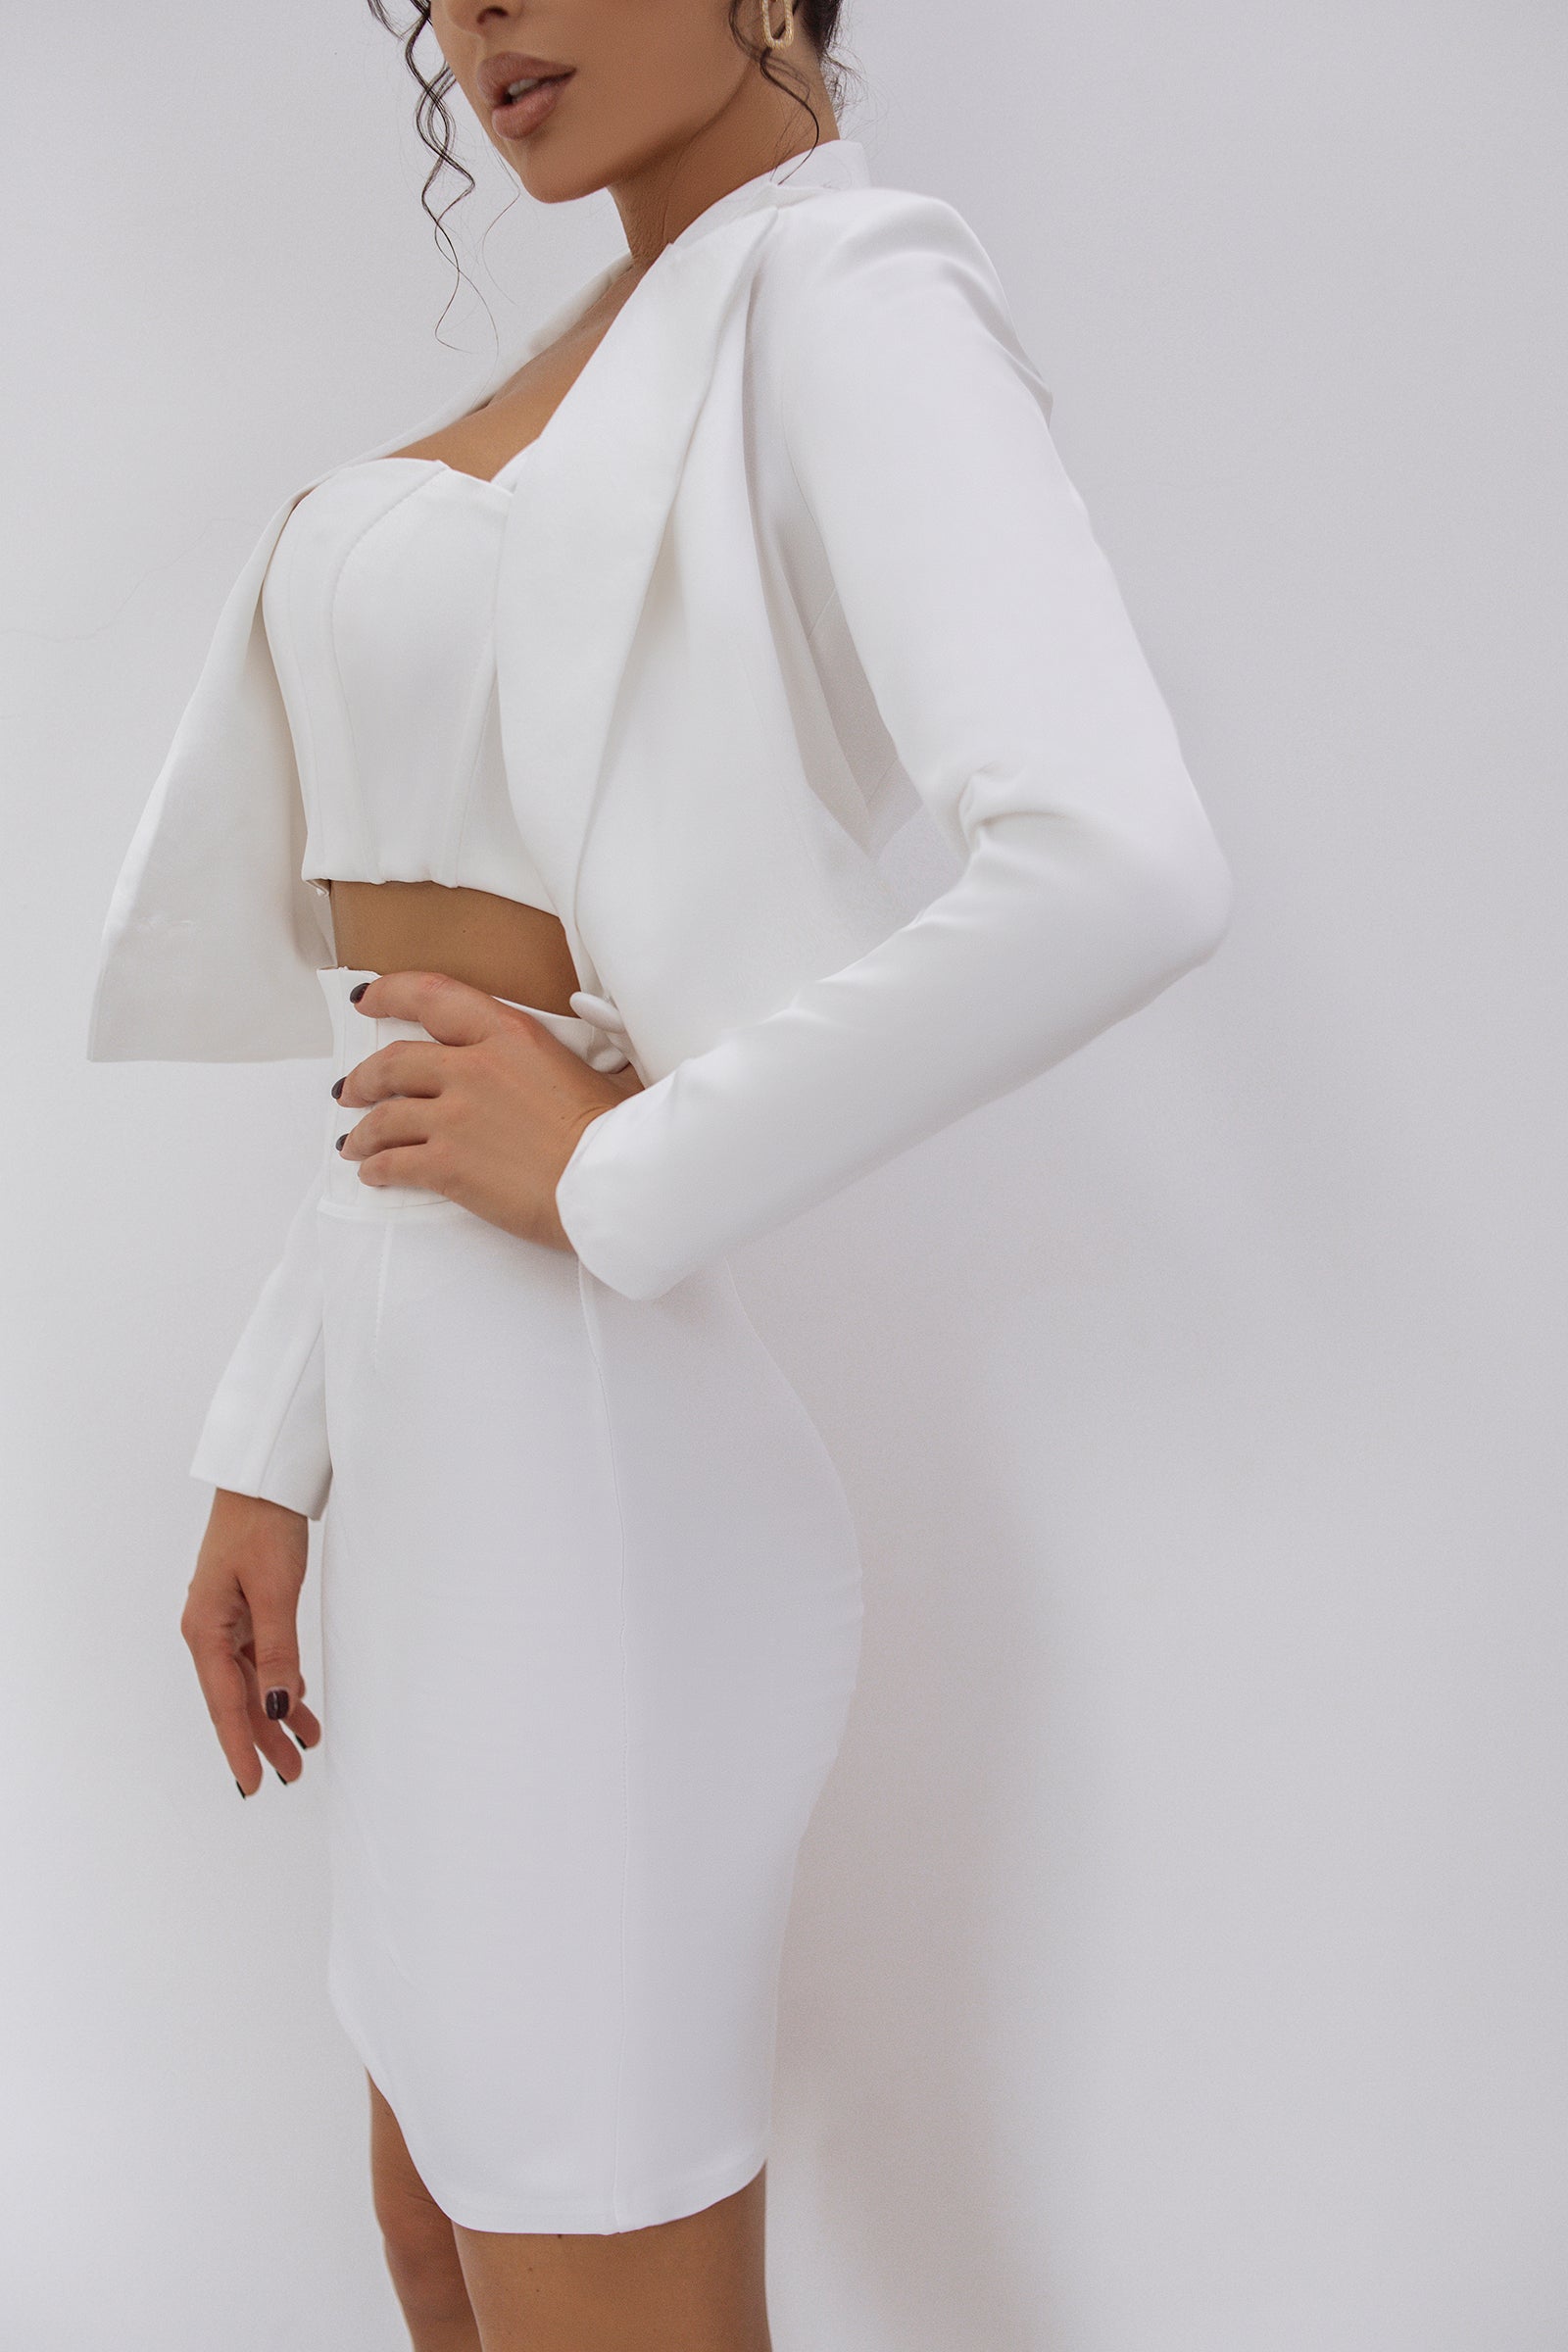 trinarosh White Crop Jacket Skirt Suit 2-Piece